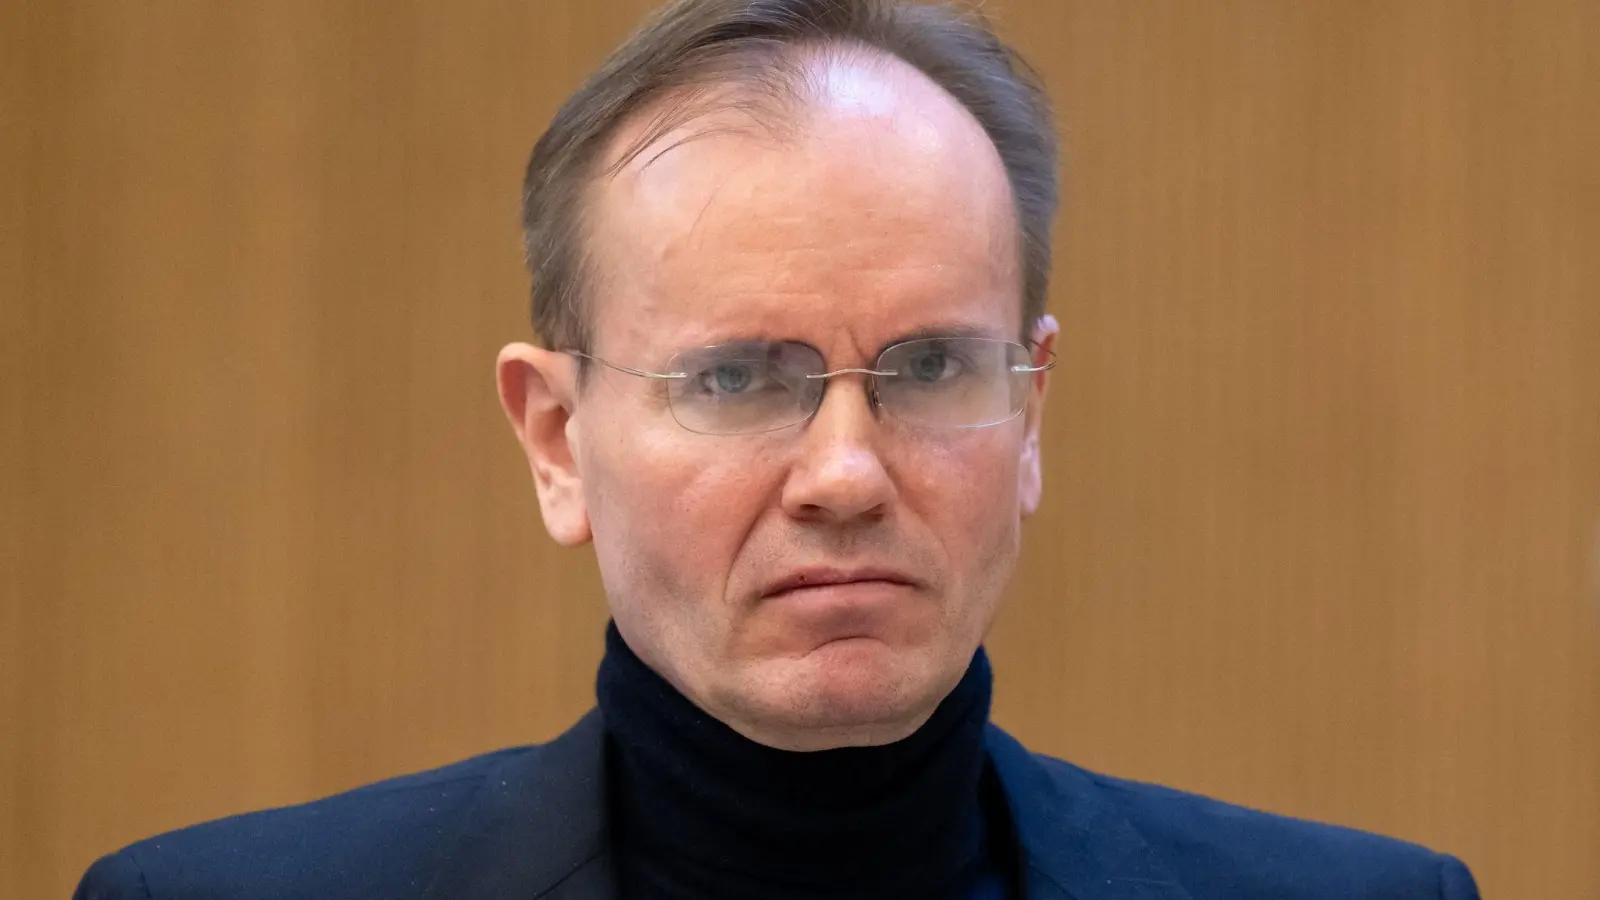 Der frühere Wirecard-Vorstandschef Markus Braun im Gerichtssaal in München. (Foto: Sven Hoppe/dpa)